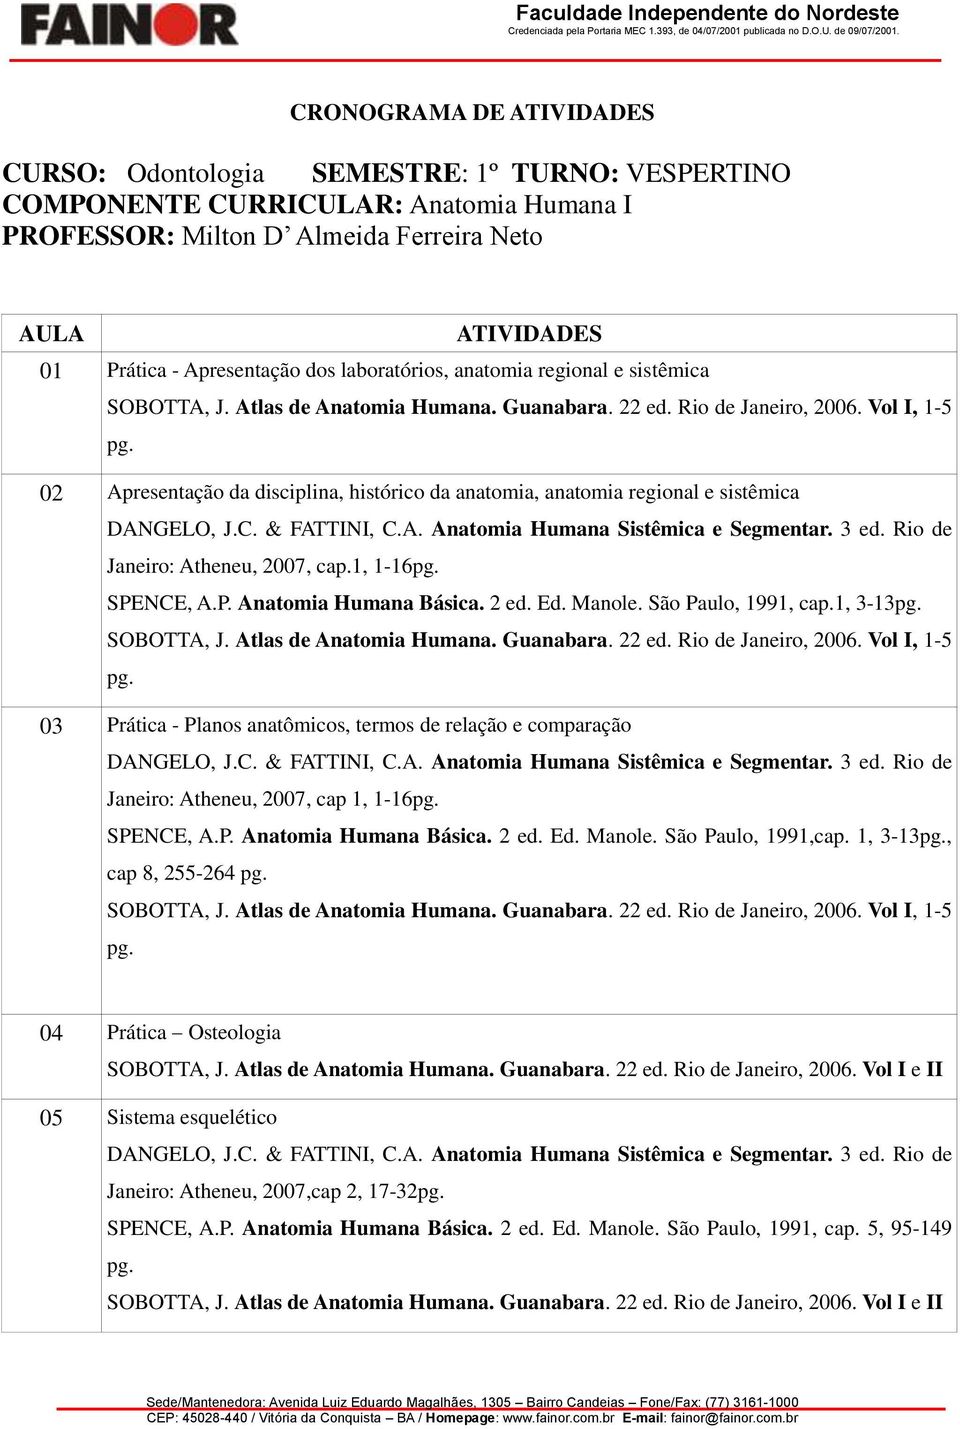 Vol I, 1-5 02 Apresentação da disciplina, histórico da anatomia, anatomia regional e sistêmica Janeiro: Atheneu, 2007, cap.1, 1-16 SPENCE, A.P. Anatomia Humana Básica. 2 ed. Ed. Manole.